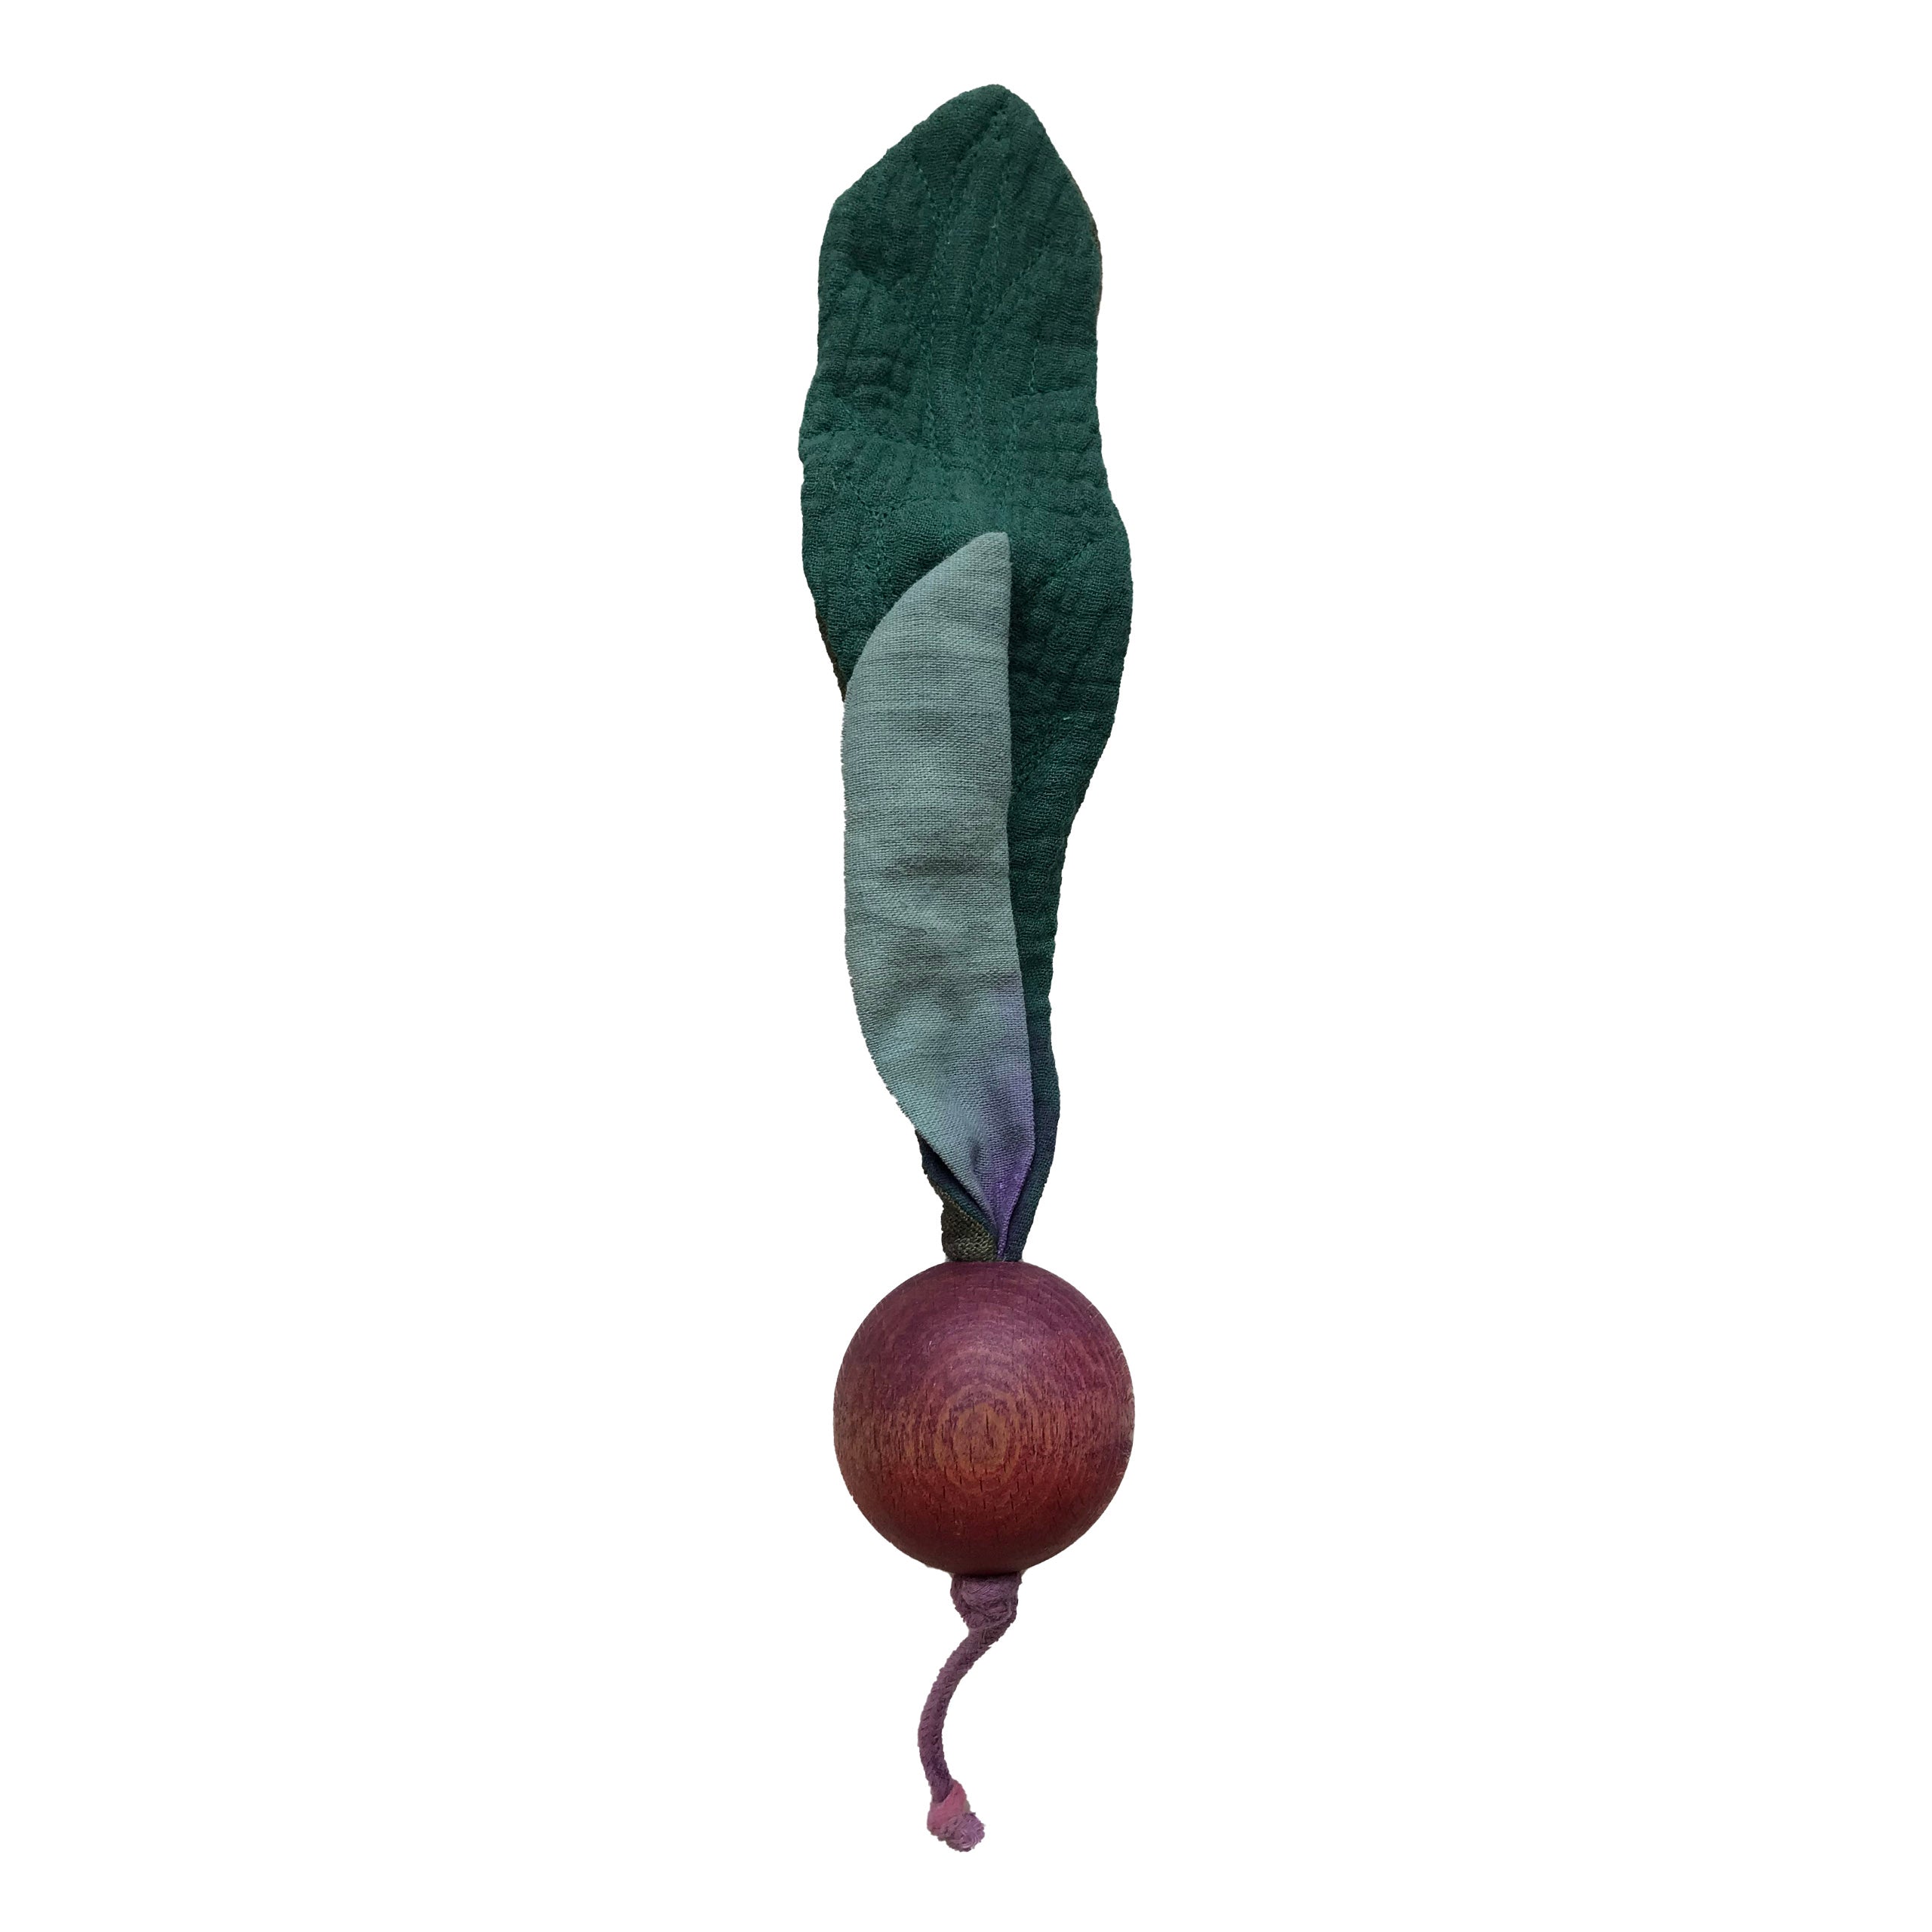 Beetroot vegetable